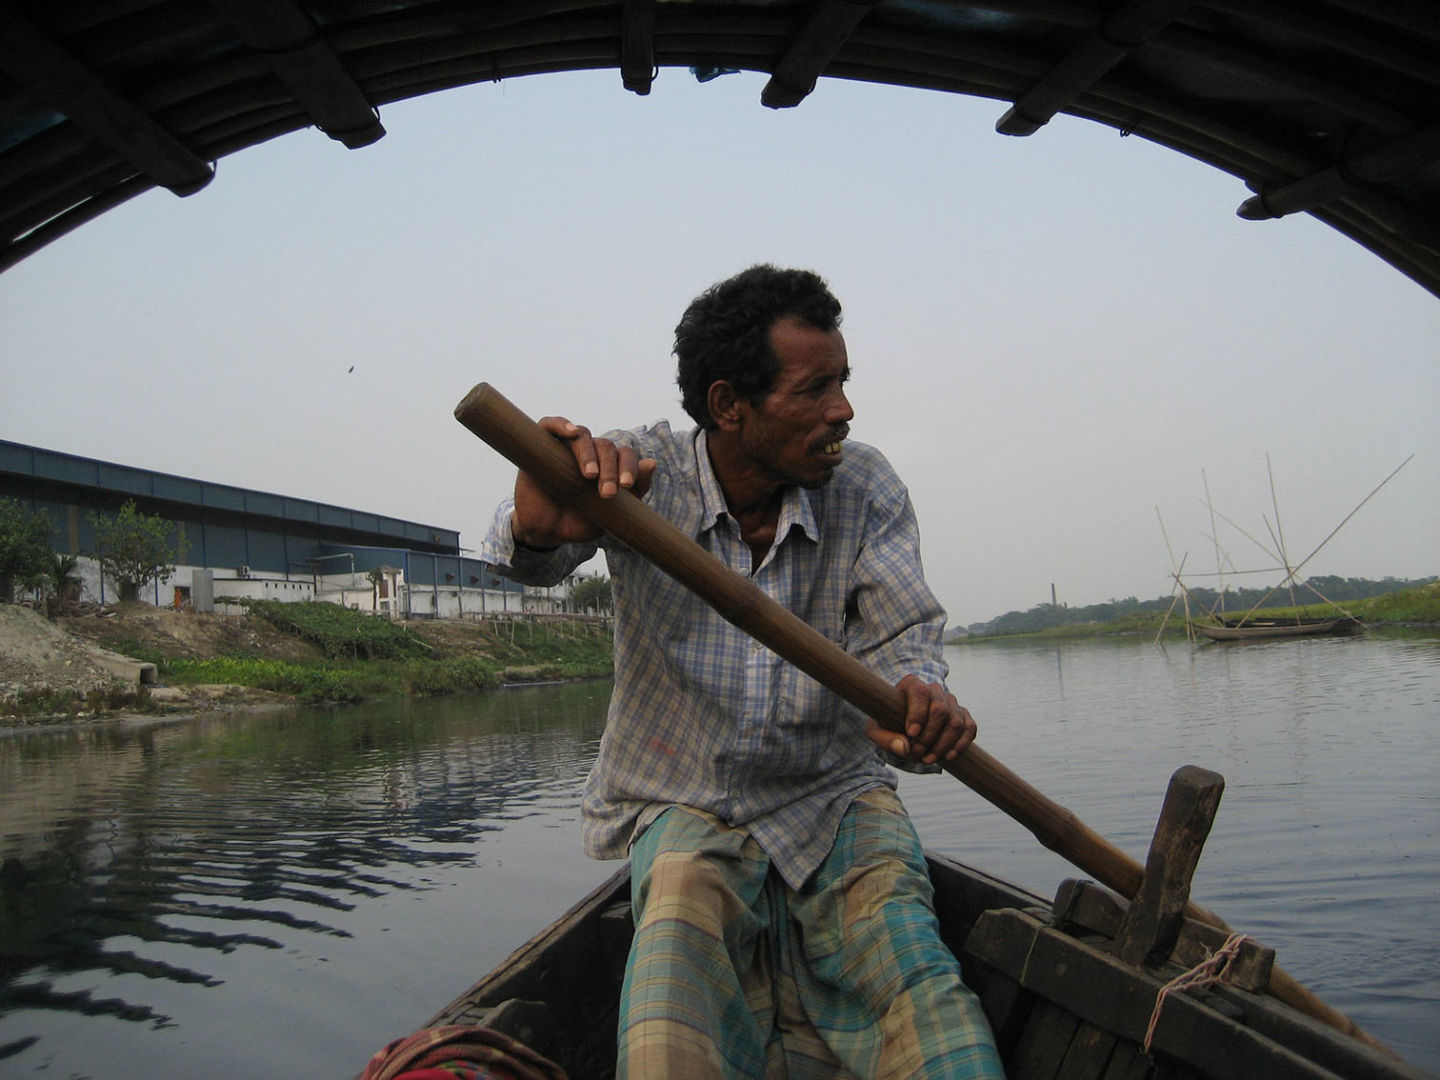 Tuni Chatterji, Okul Nodi (Endless River) (film still), 2012, 16mm film and DV video, 52 minutes. Art © Tuni Chatterji, all rights reserved.